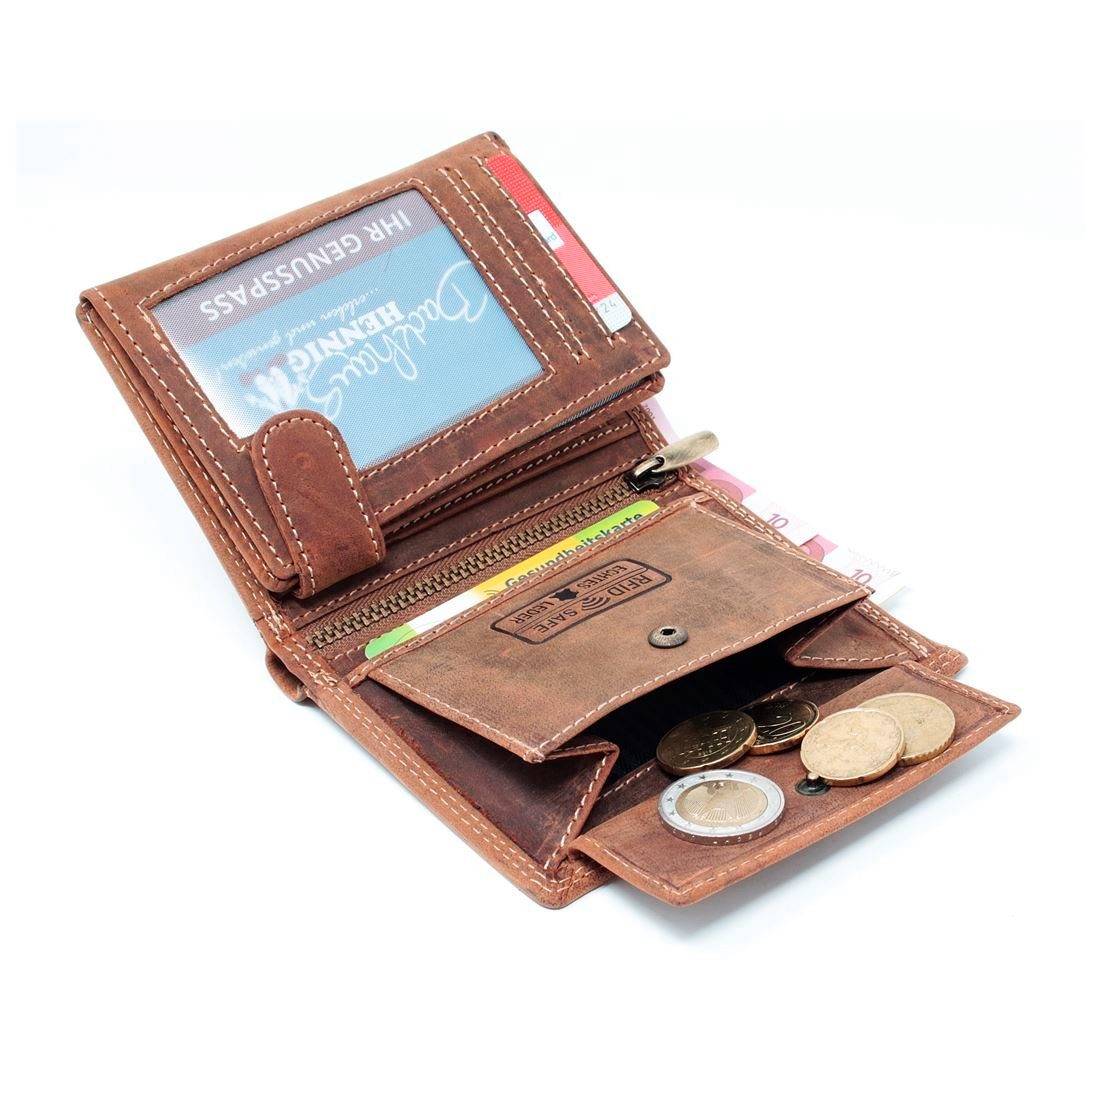 SHG Geldbörse Herren Geldbörse Börse, mit Schutz Portemonnaie Geldbeutel RFID Lederbörse Männerbörse Leder Münzfach Brieftasche